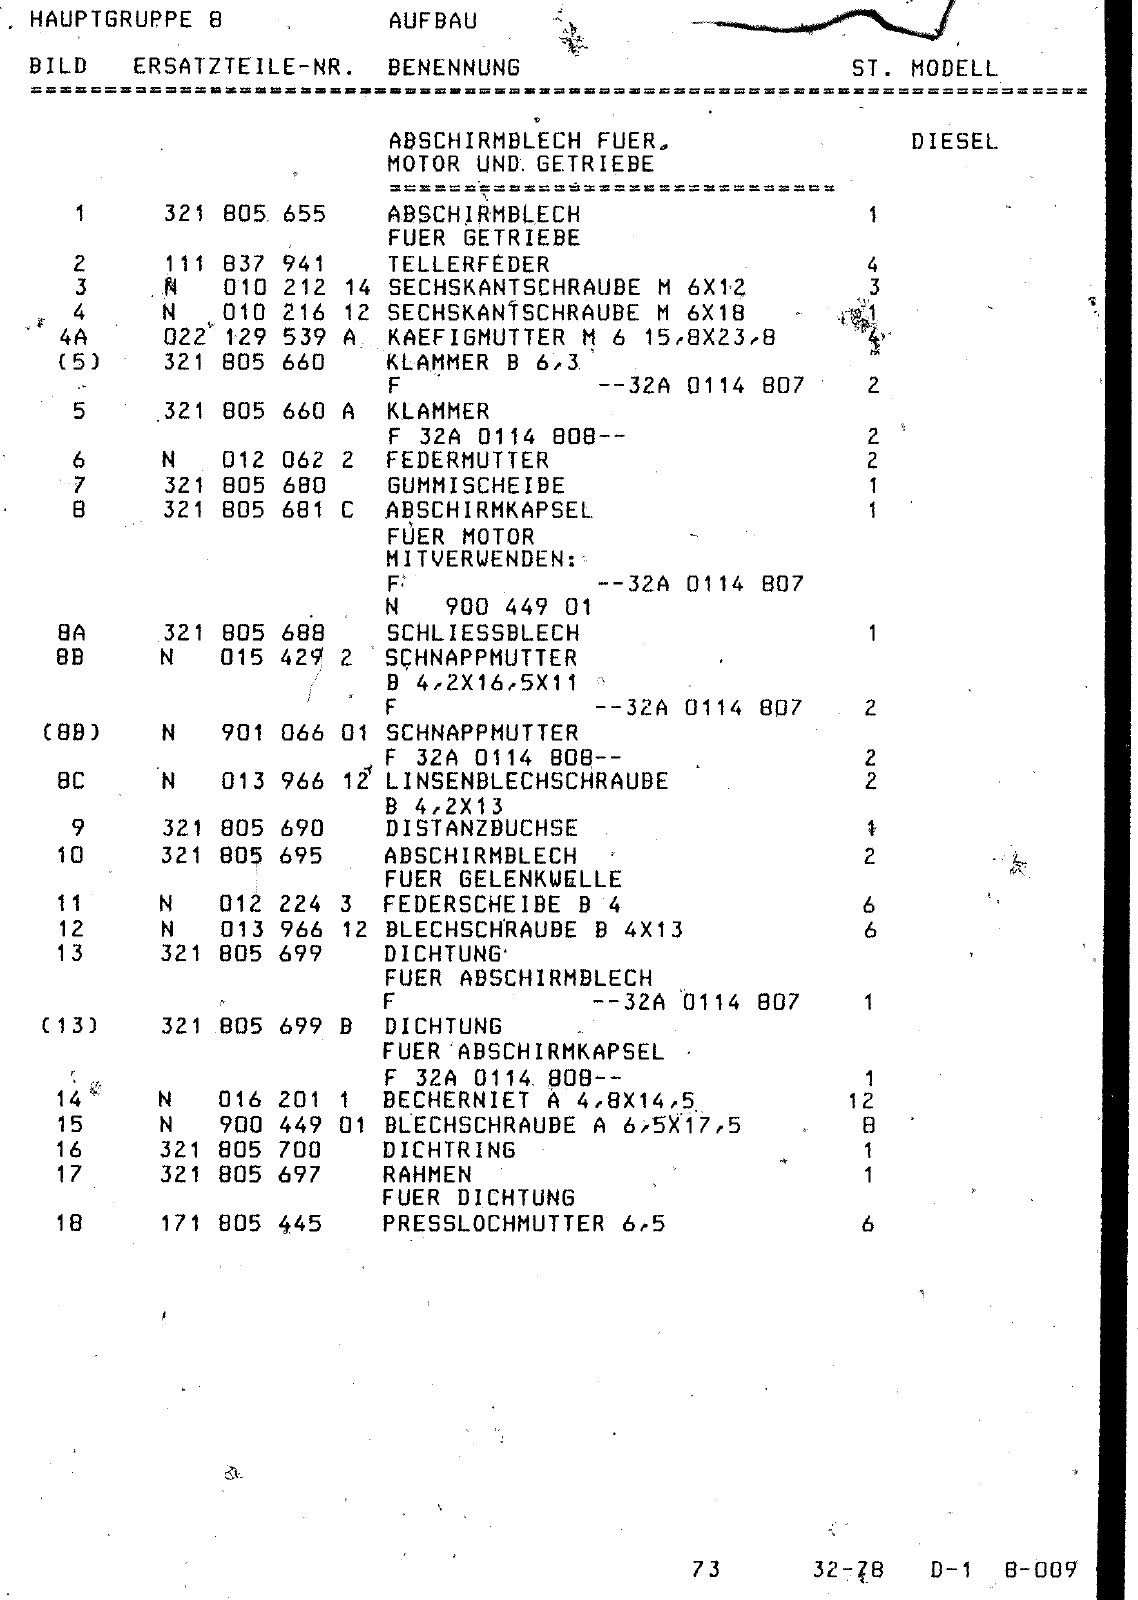 Vorschau Passat Mod 78-80 Seite 532